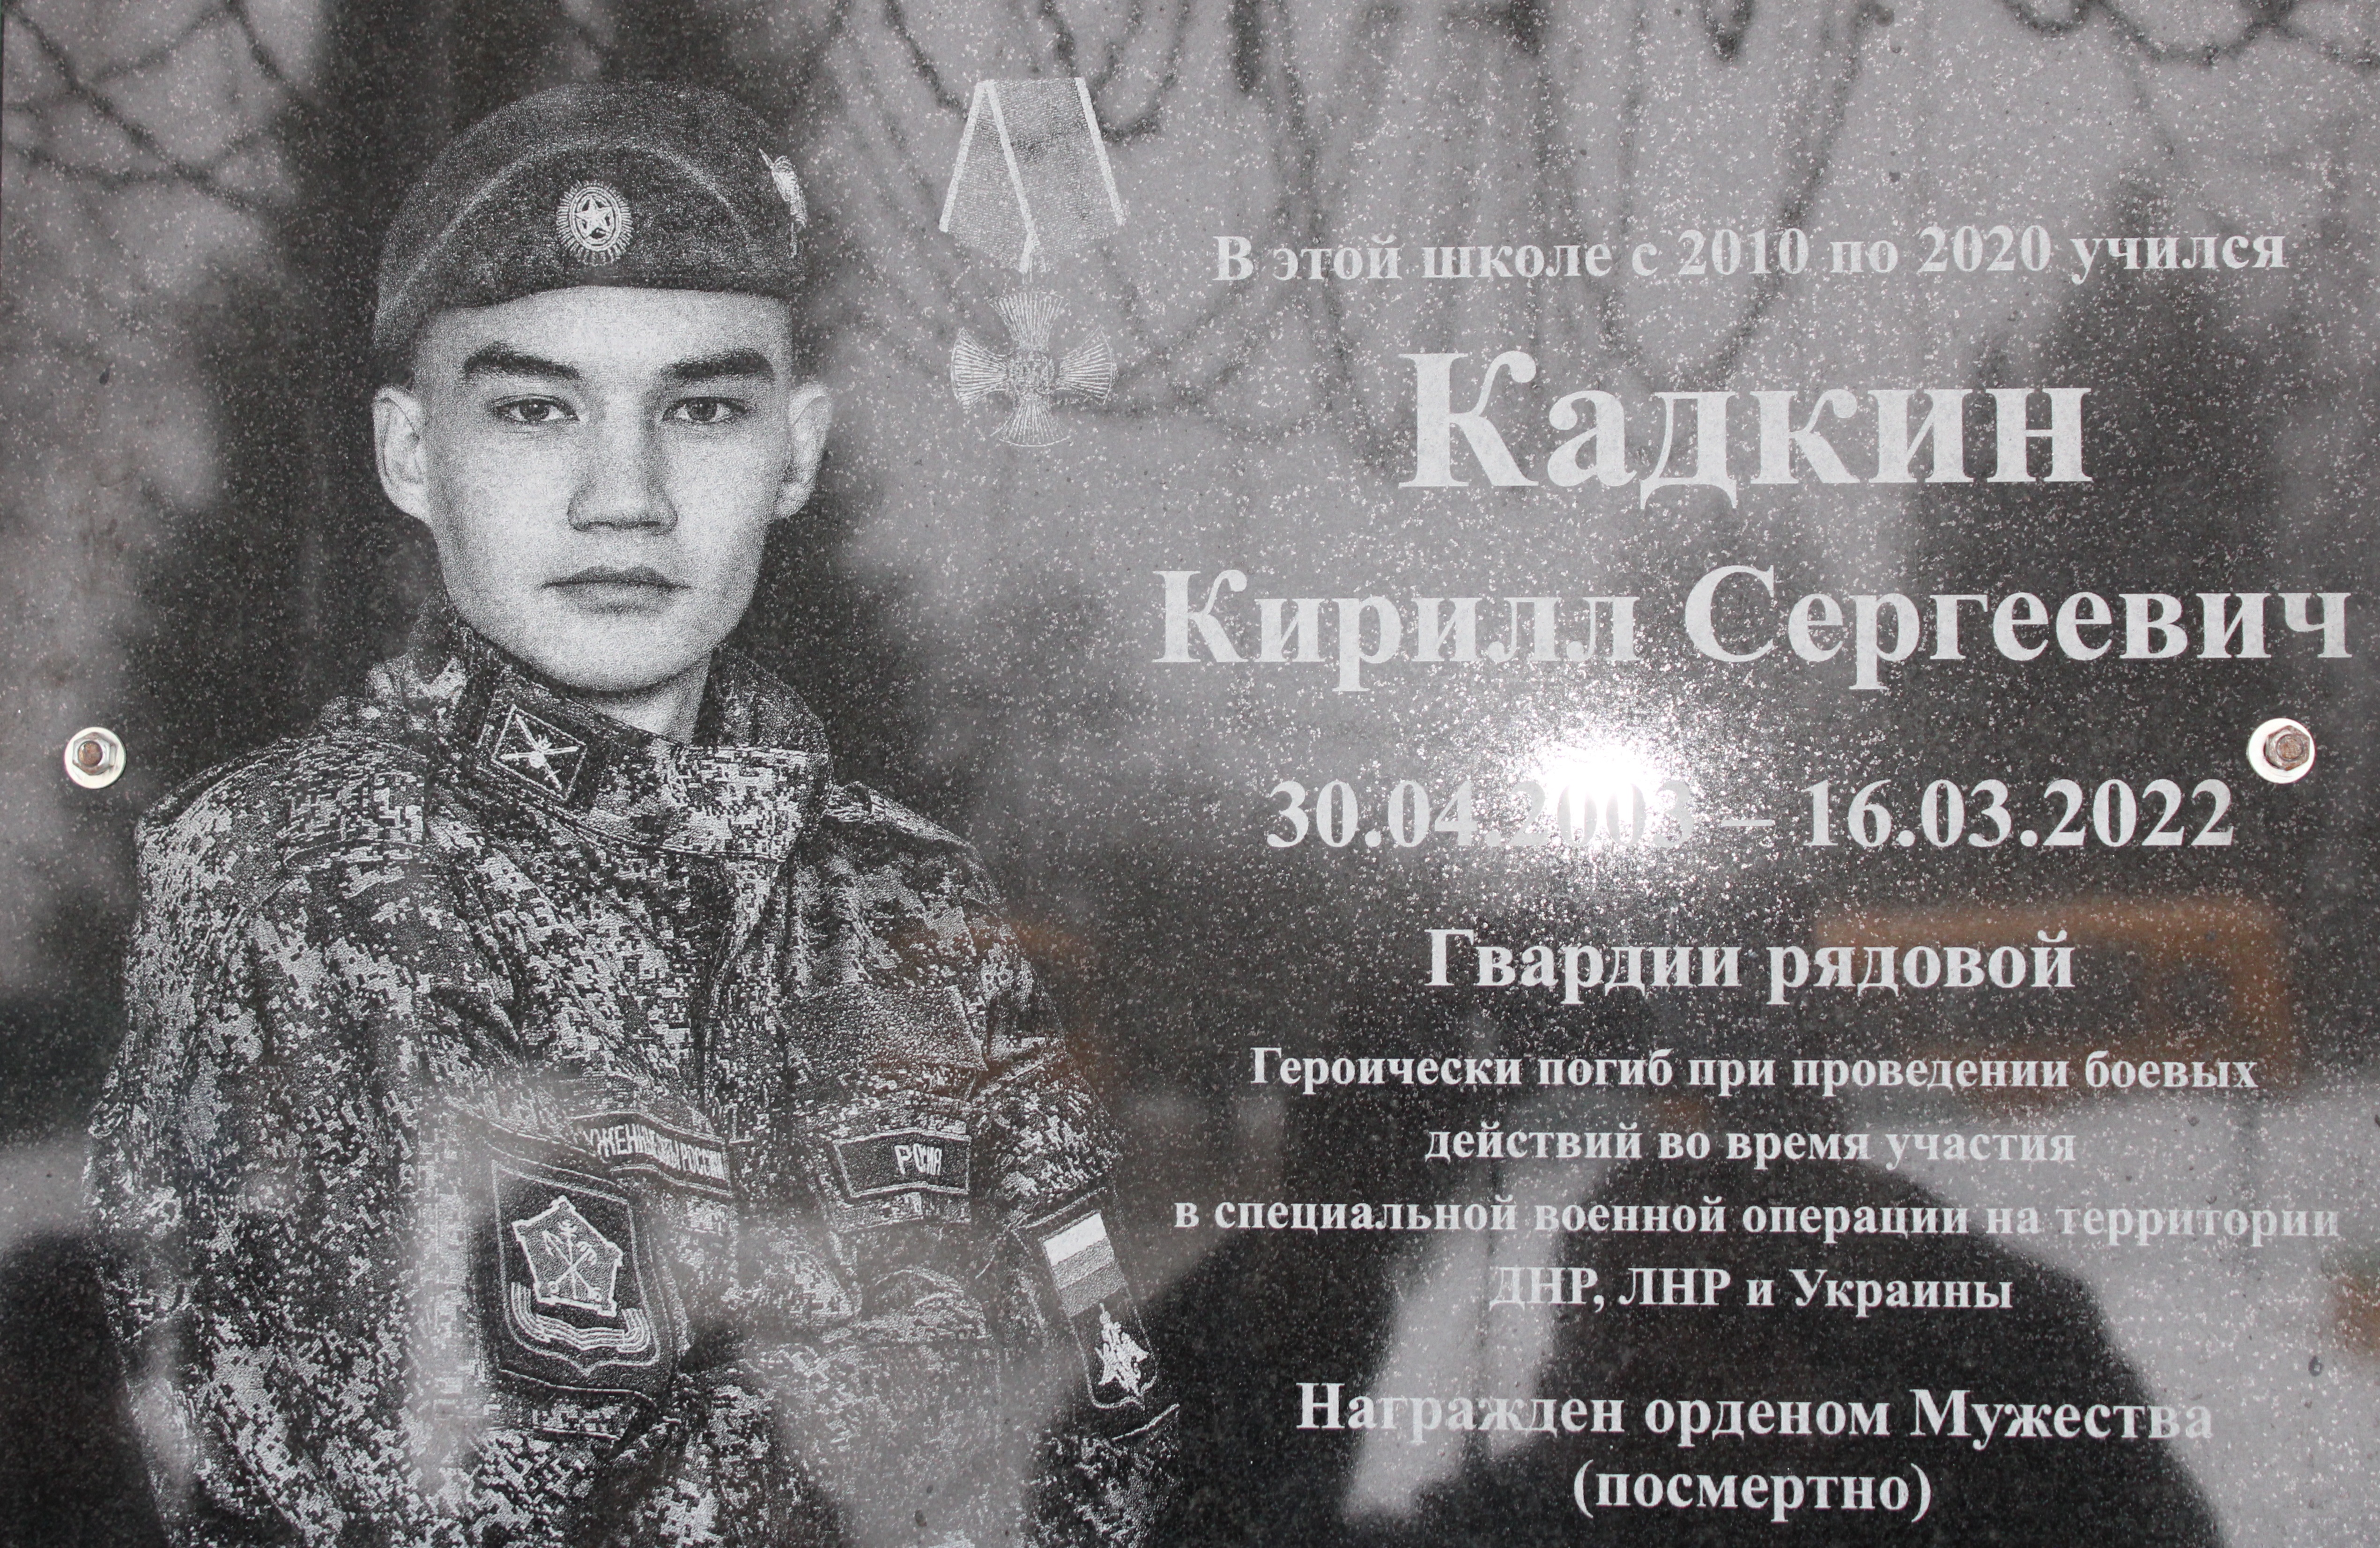 Годовщина гибели выпускника нашей школы Кадкина Кирилла, погибшего при участии в СВО на Украине.